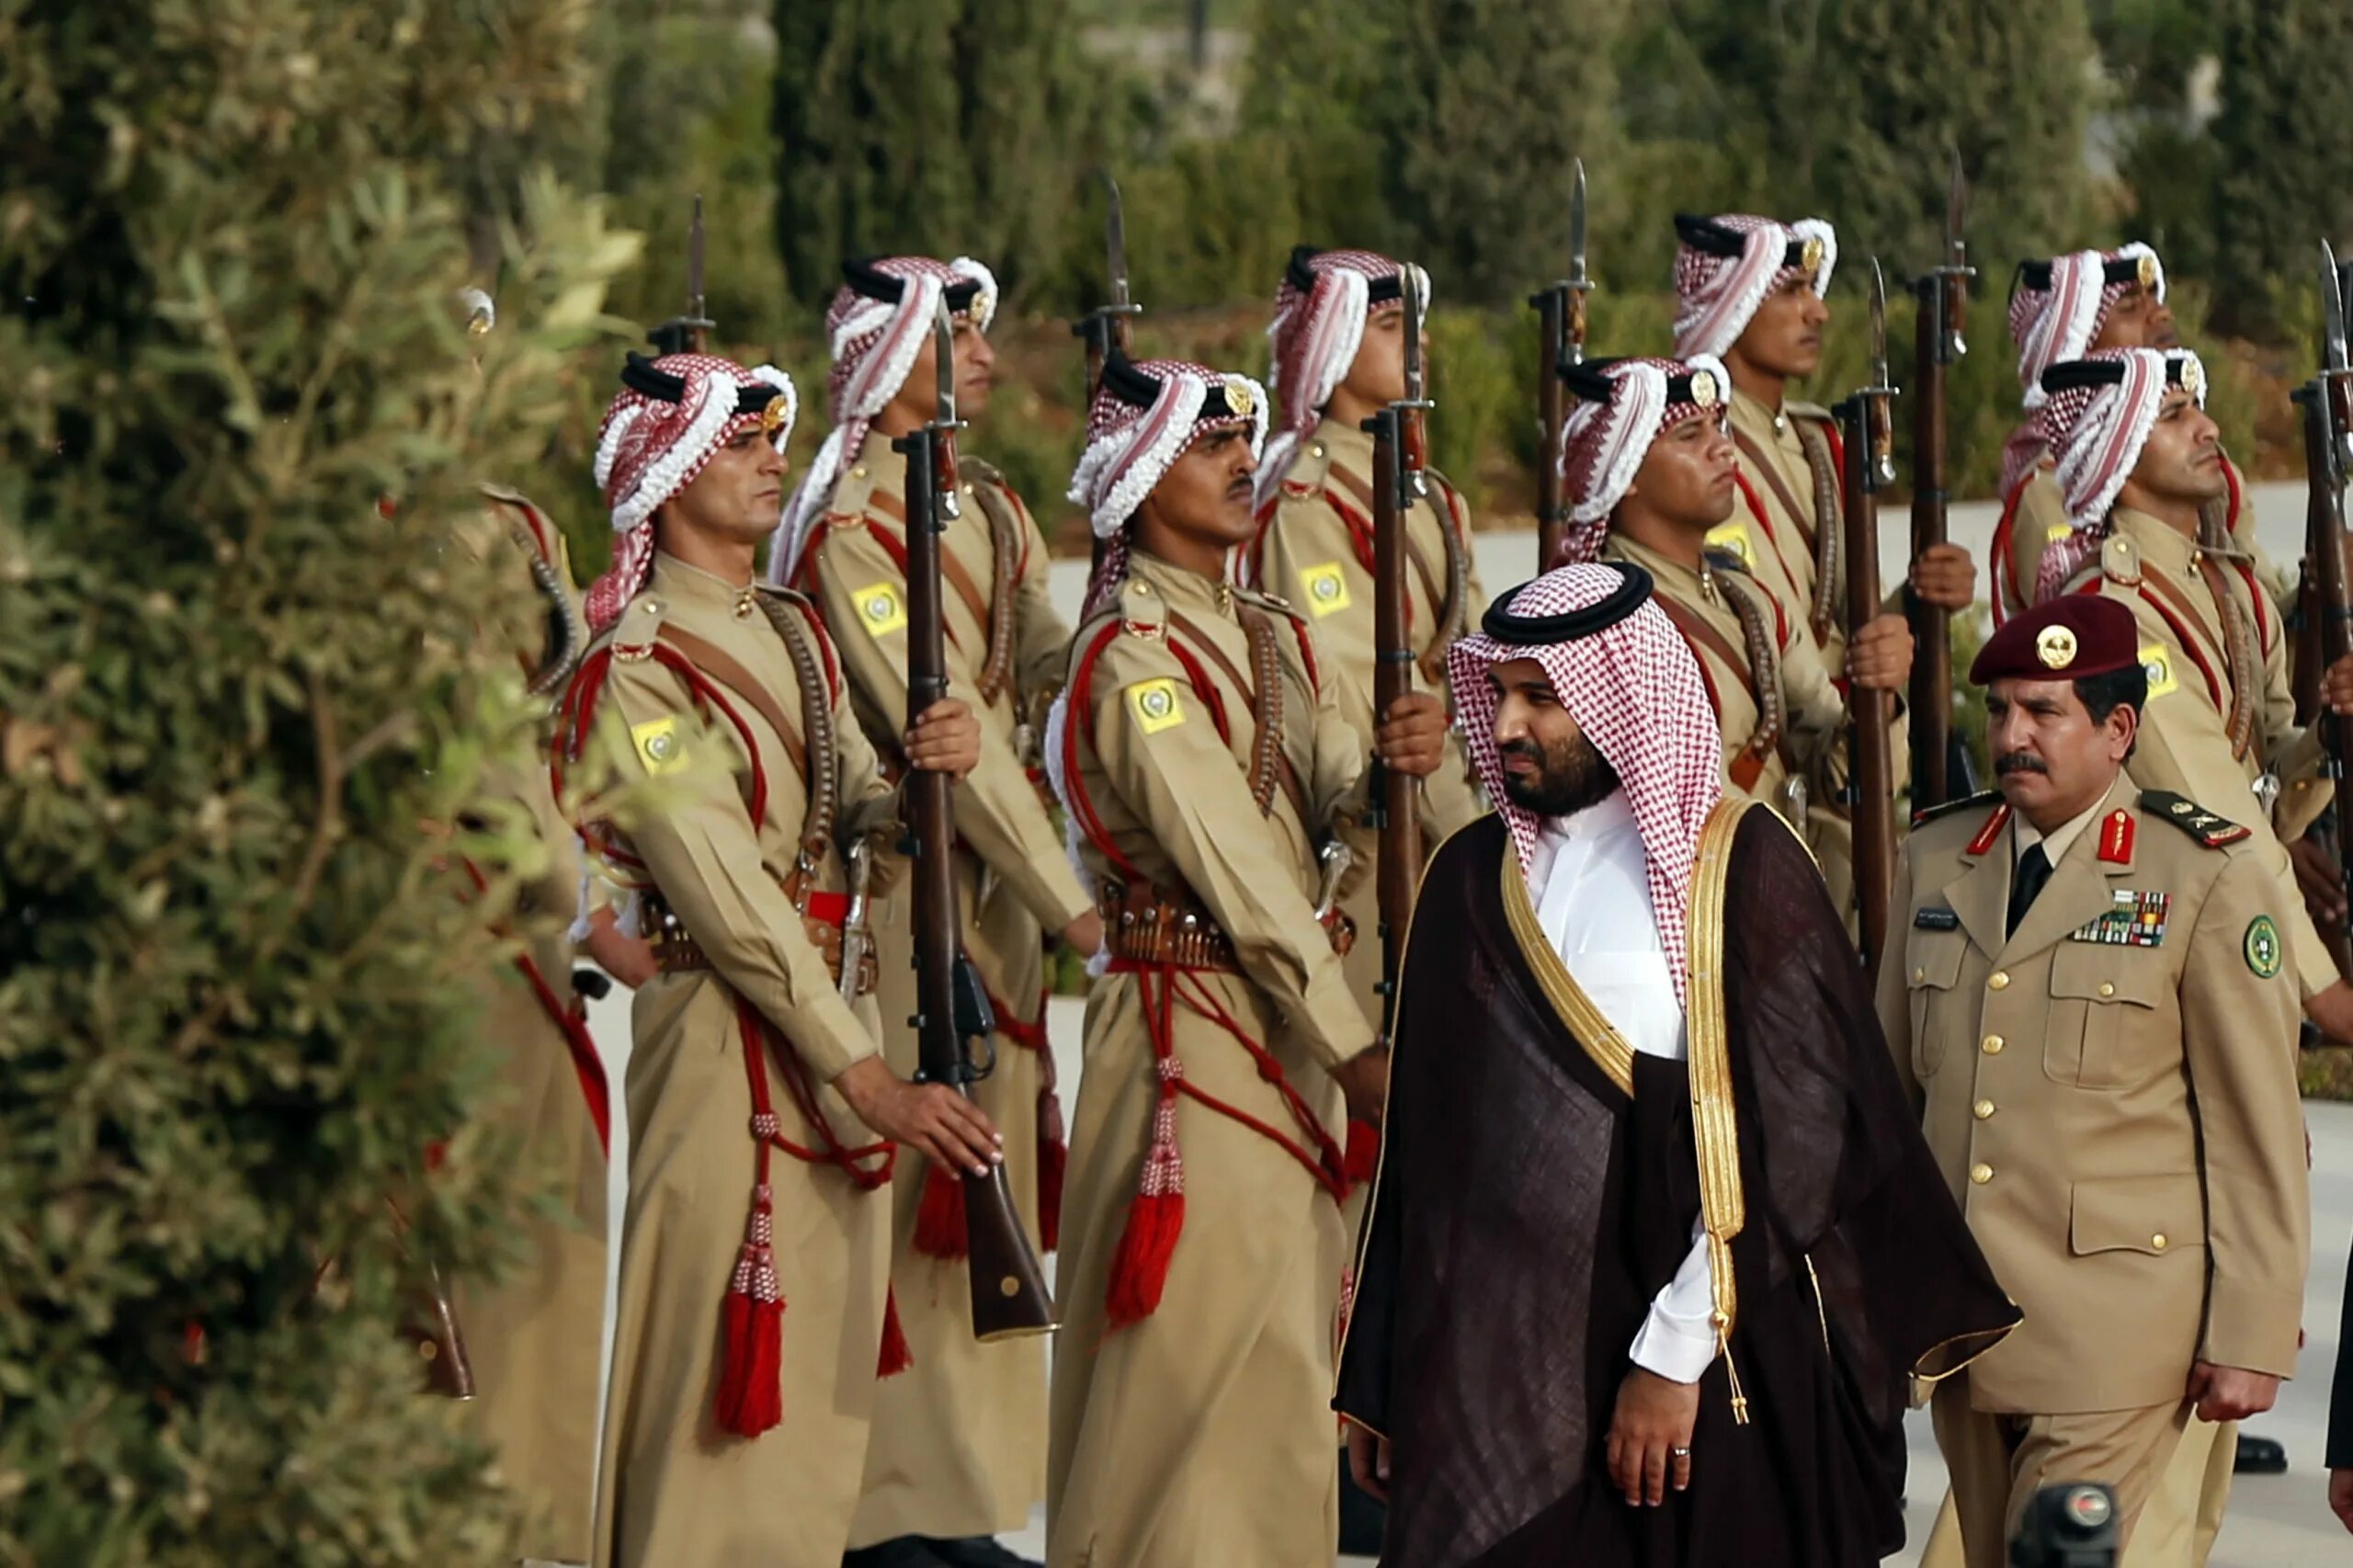 Королевская гвардия Саудовской Аравии. Национальная гвардия Саудовской Аравии. Форма армии Саудовской Аравии. Национальная гвардия короля Саудовской Аравии. Саудовская аравия военные